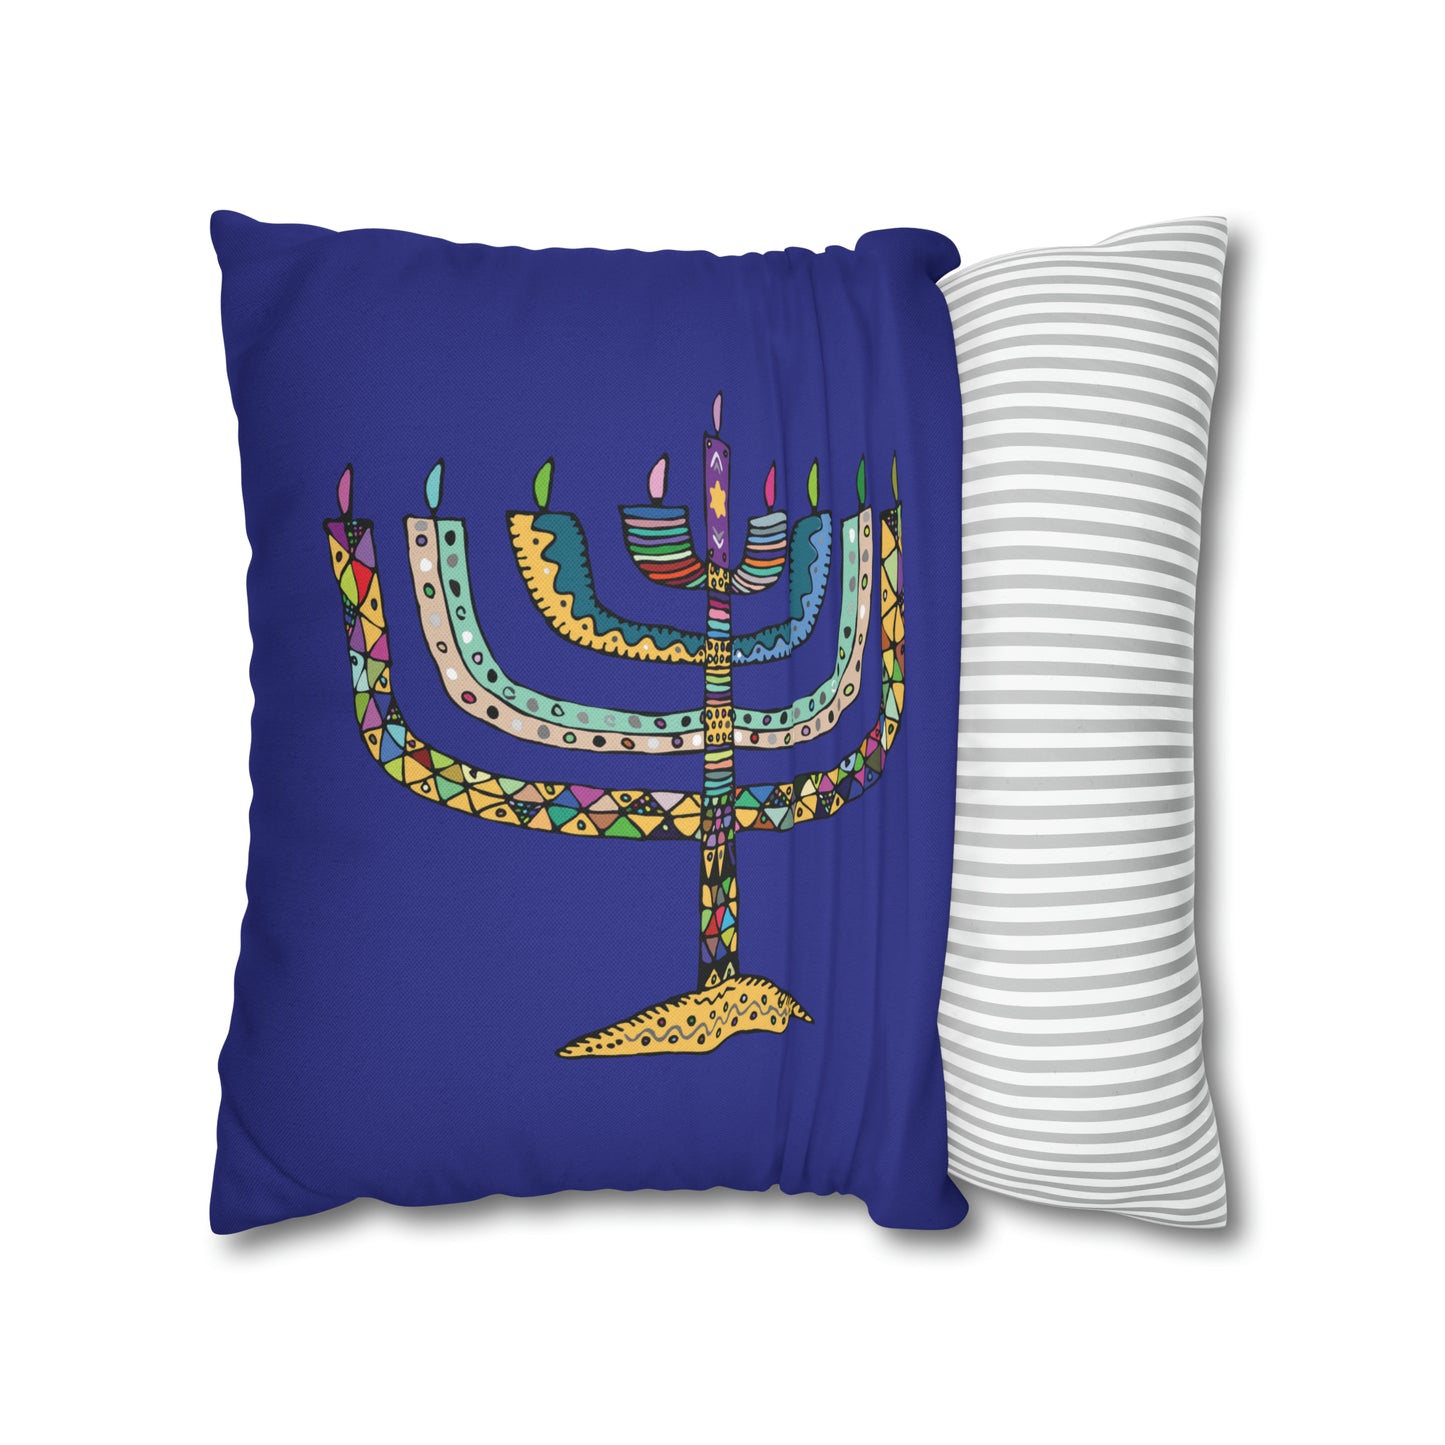 Mosaic Menorah Hanukkah Pillow Cover, Blue